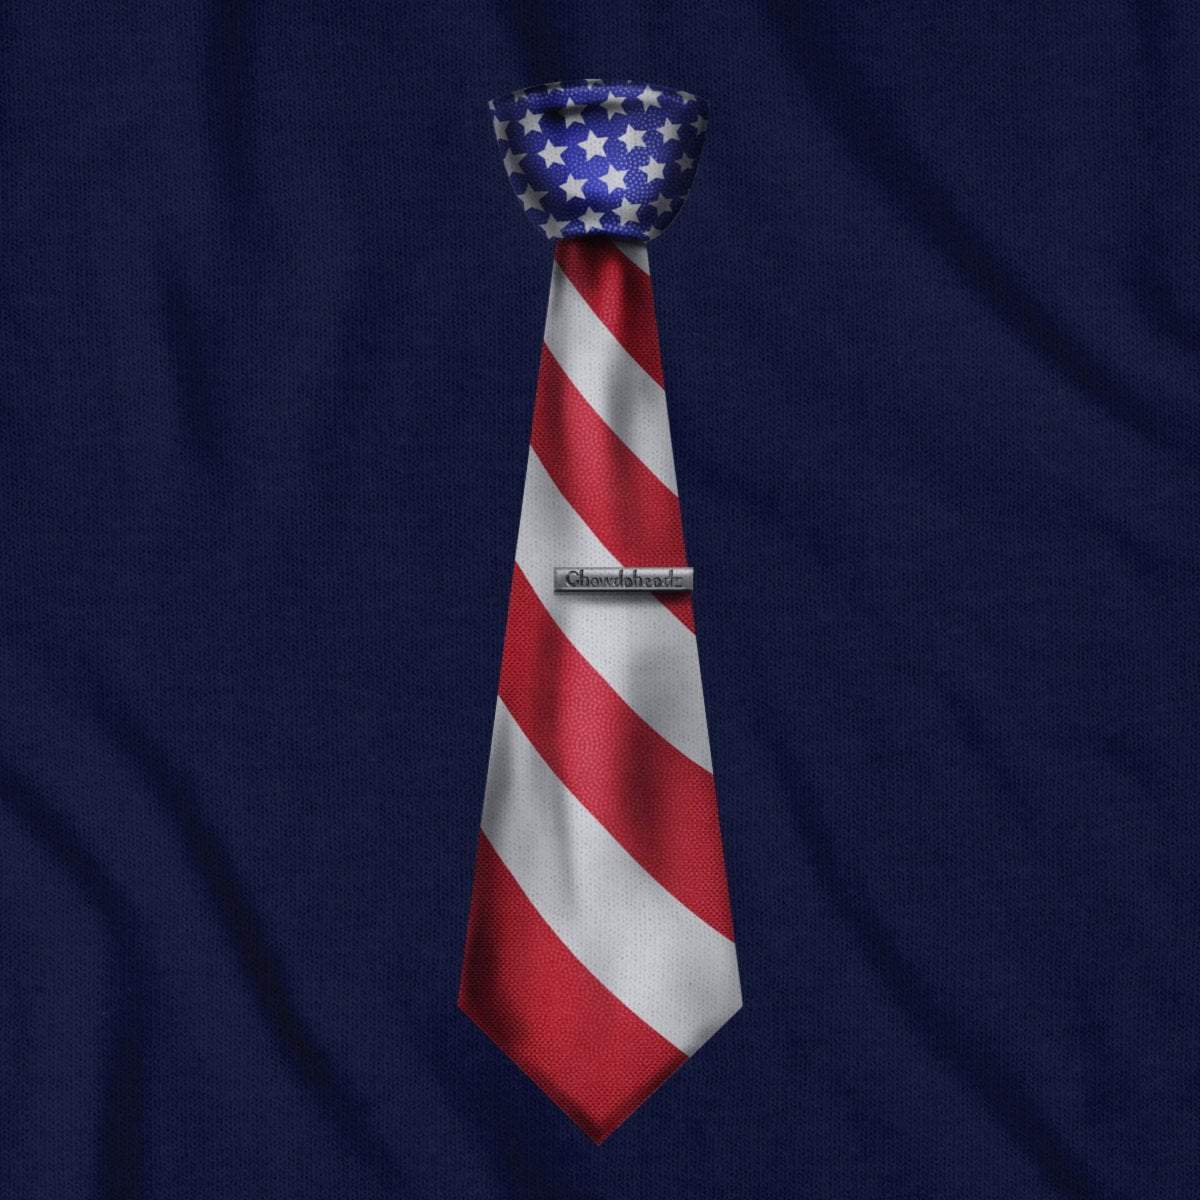 Patriotic USA Necktie T-Shirt - Chowdaheadz